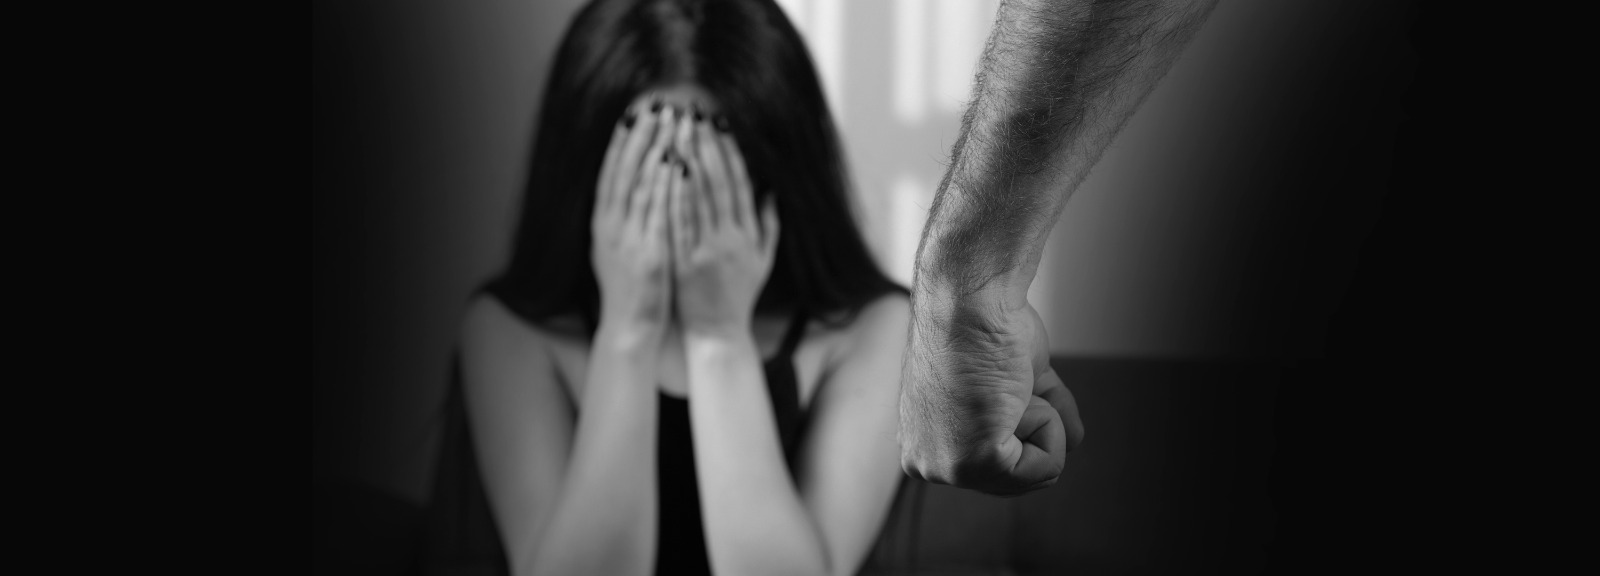 Relacionamento abusivo: os fatores que prendem a vítima ao agressor